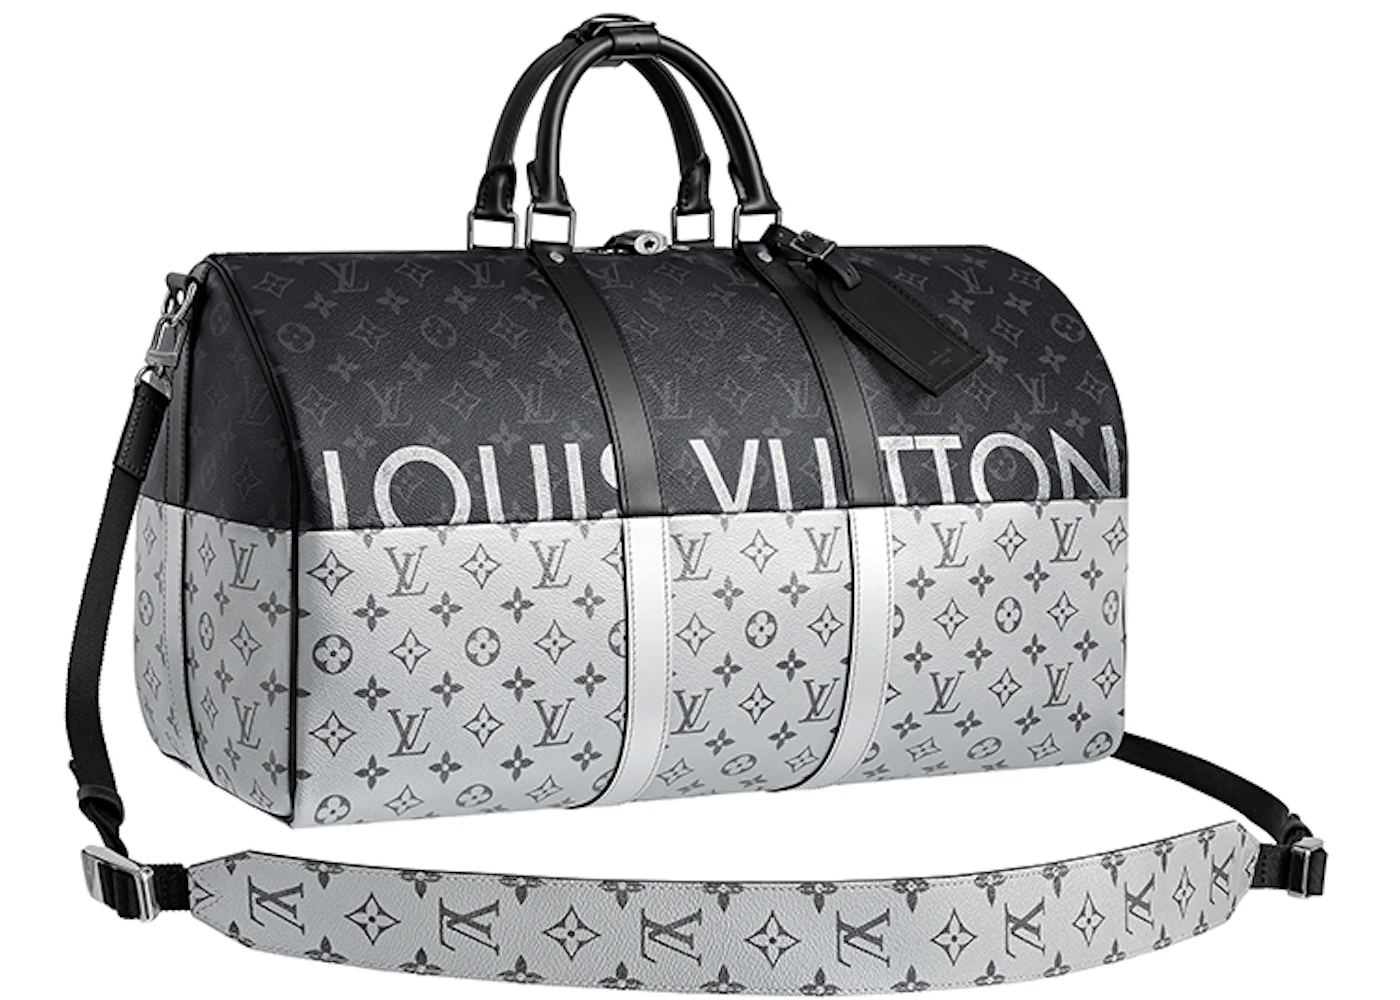 Buy Louis Vuitton Duffle Accessories - Color Black - StockX